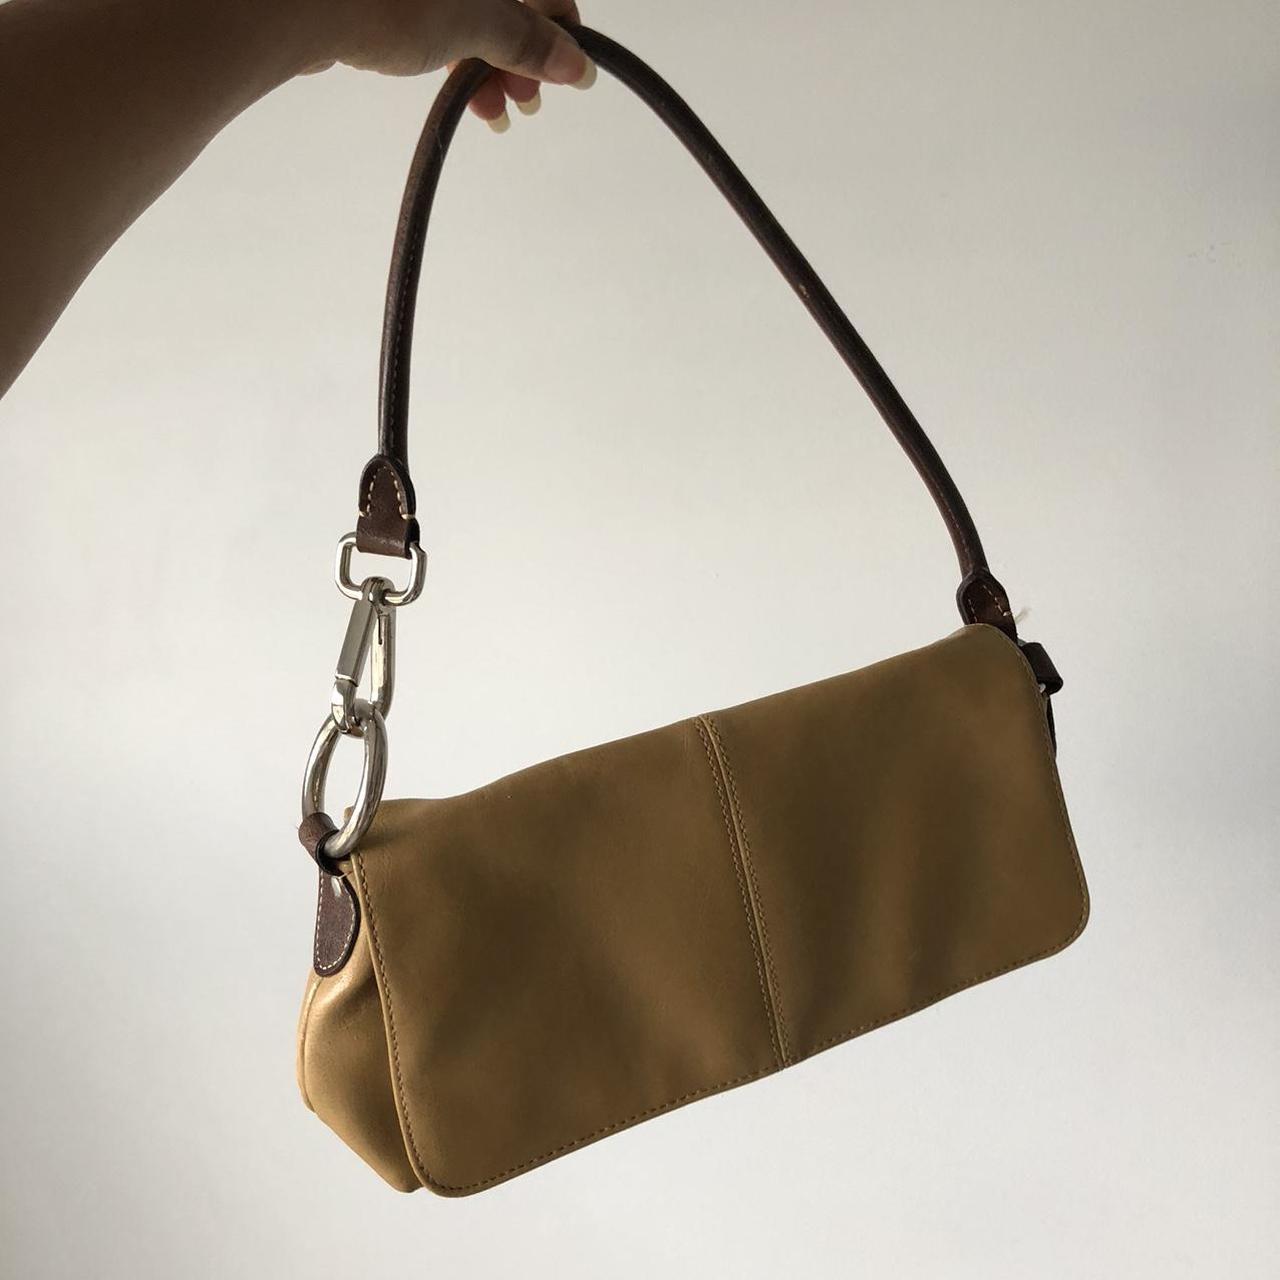 Product Image 1 - Mandani tan shoulder bag.